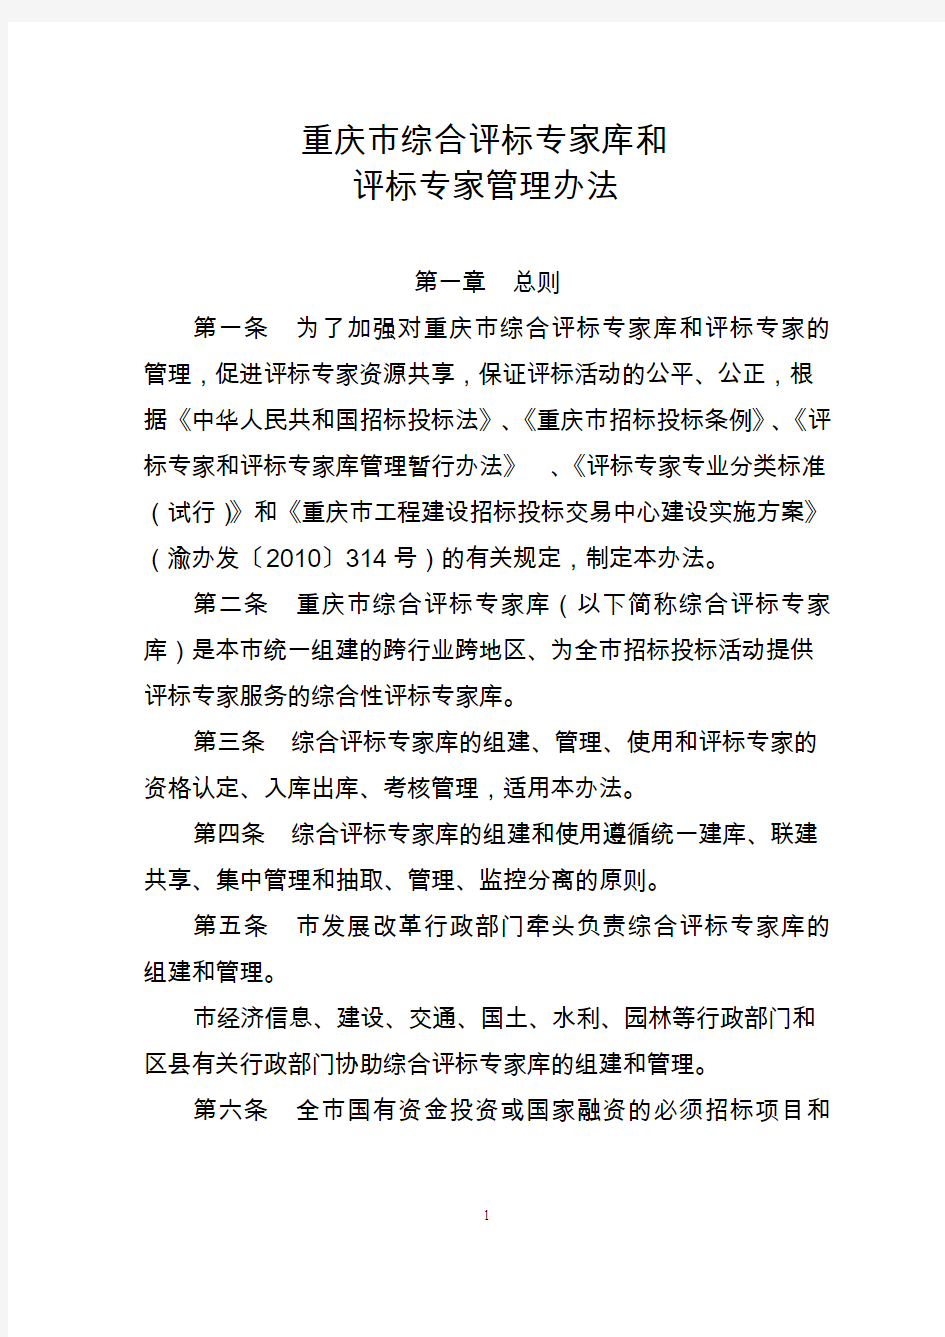 重庆市综合评标专家库和评标专家管理办法